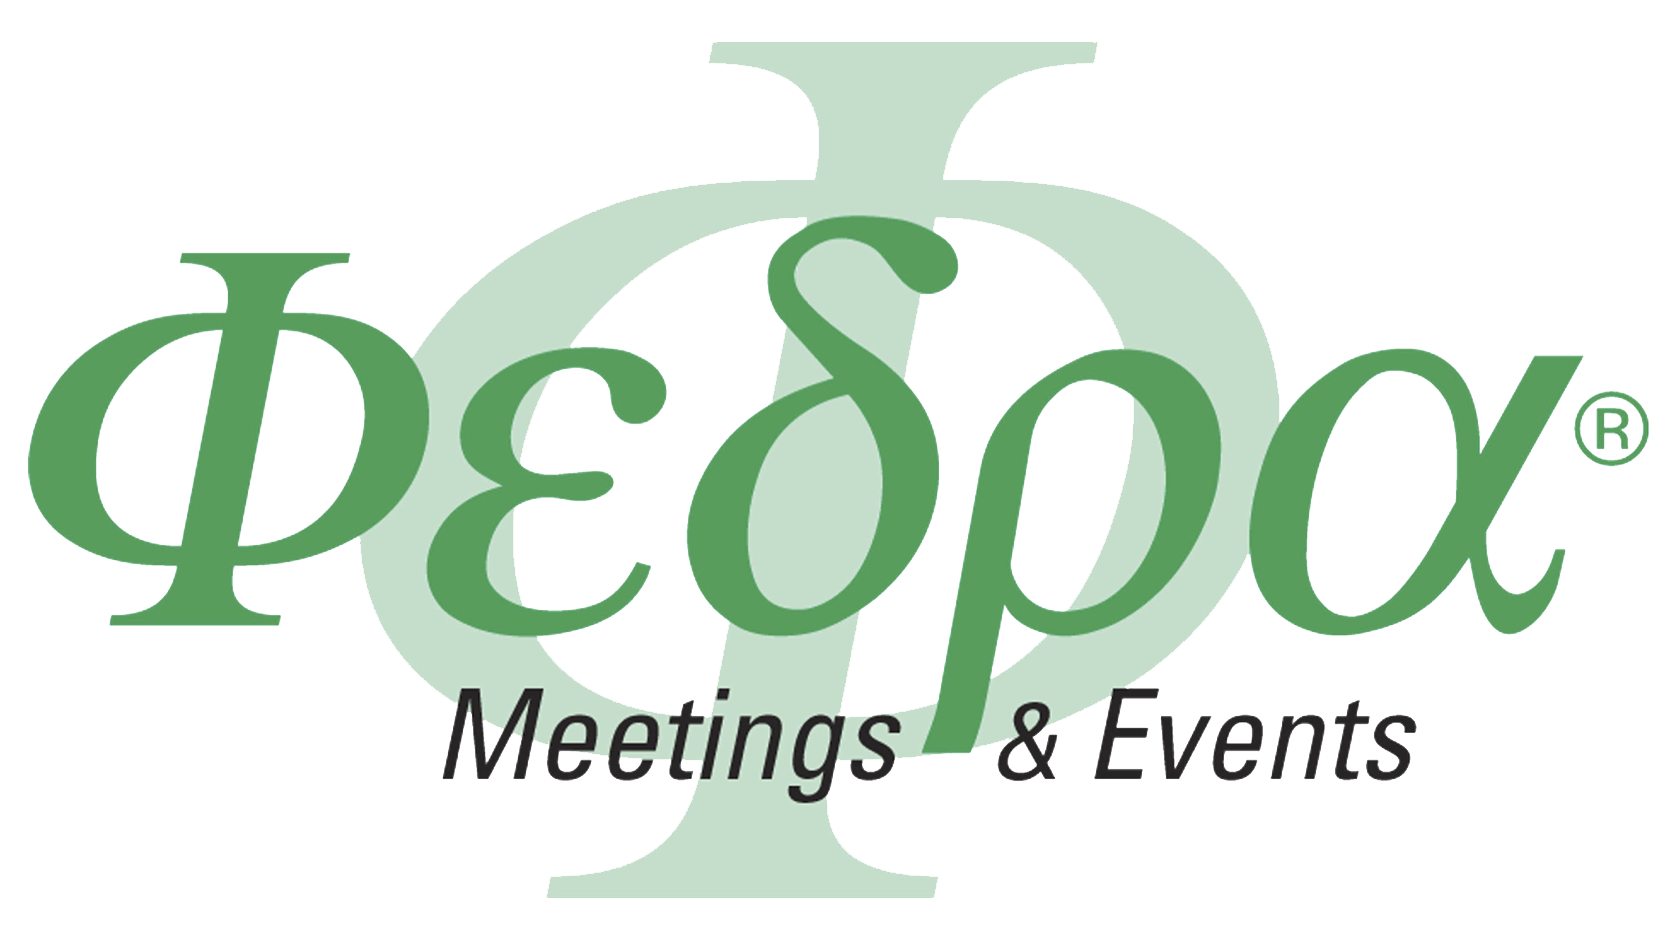 FEDRA - Meetings & Events